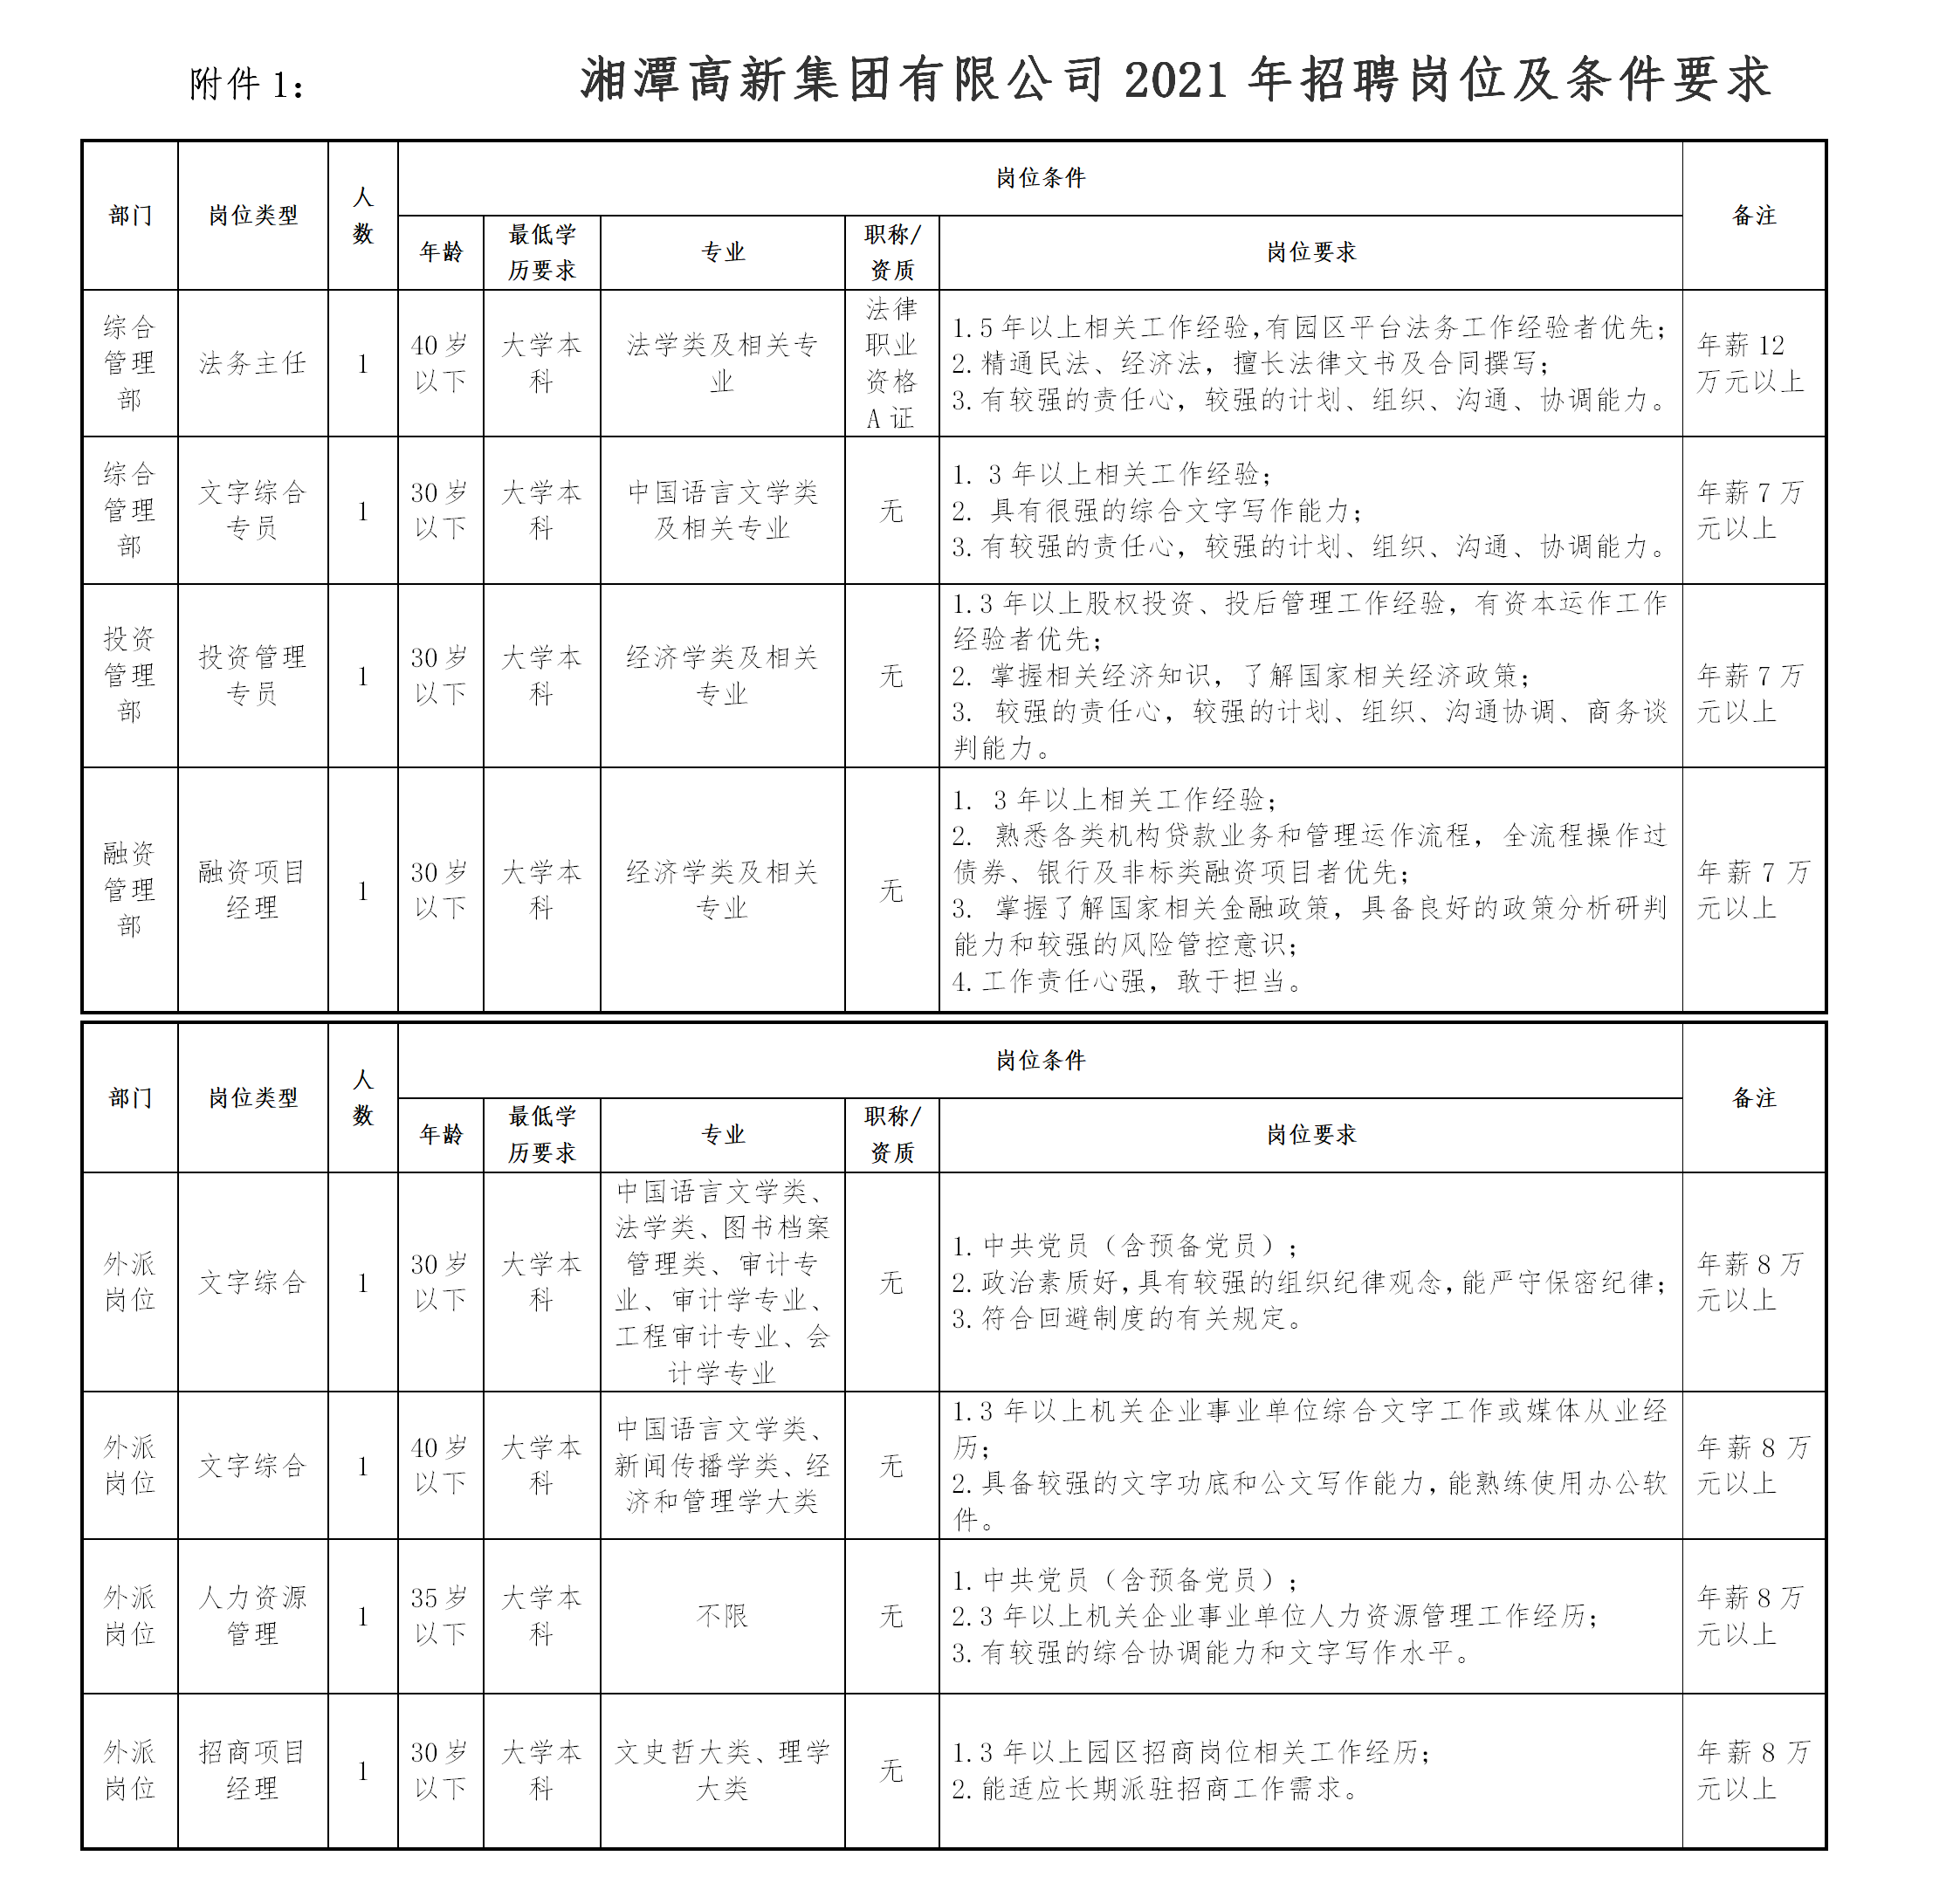 2021年湘潭高新集团有限公司招聘岗位及条件要求hn.png